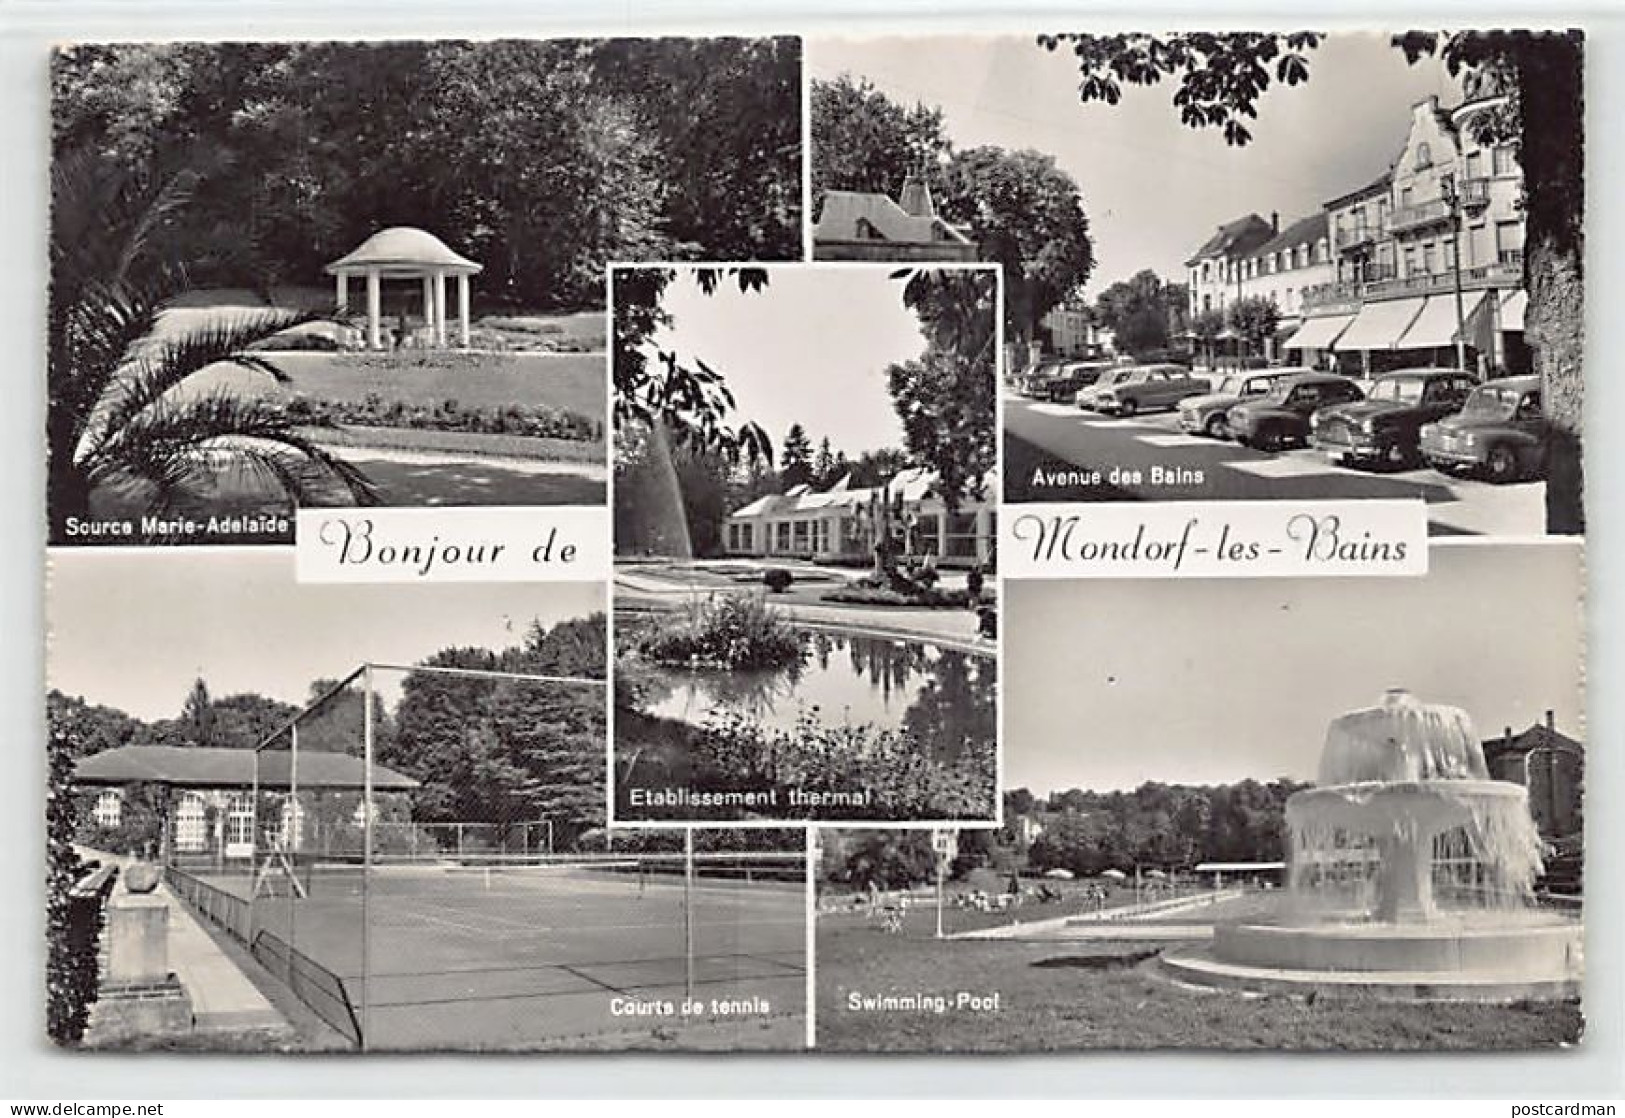 Luxembourg - MONDORF LES BAINS - Courts De Tennis - Source Marie-Adélaïde - Avenue Des Bains - Swimming-pool - Ed. Paul  - Bad Mondorf